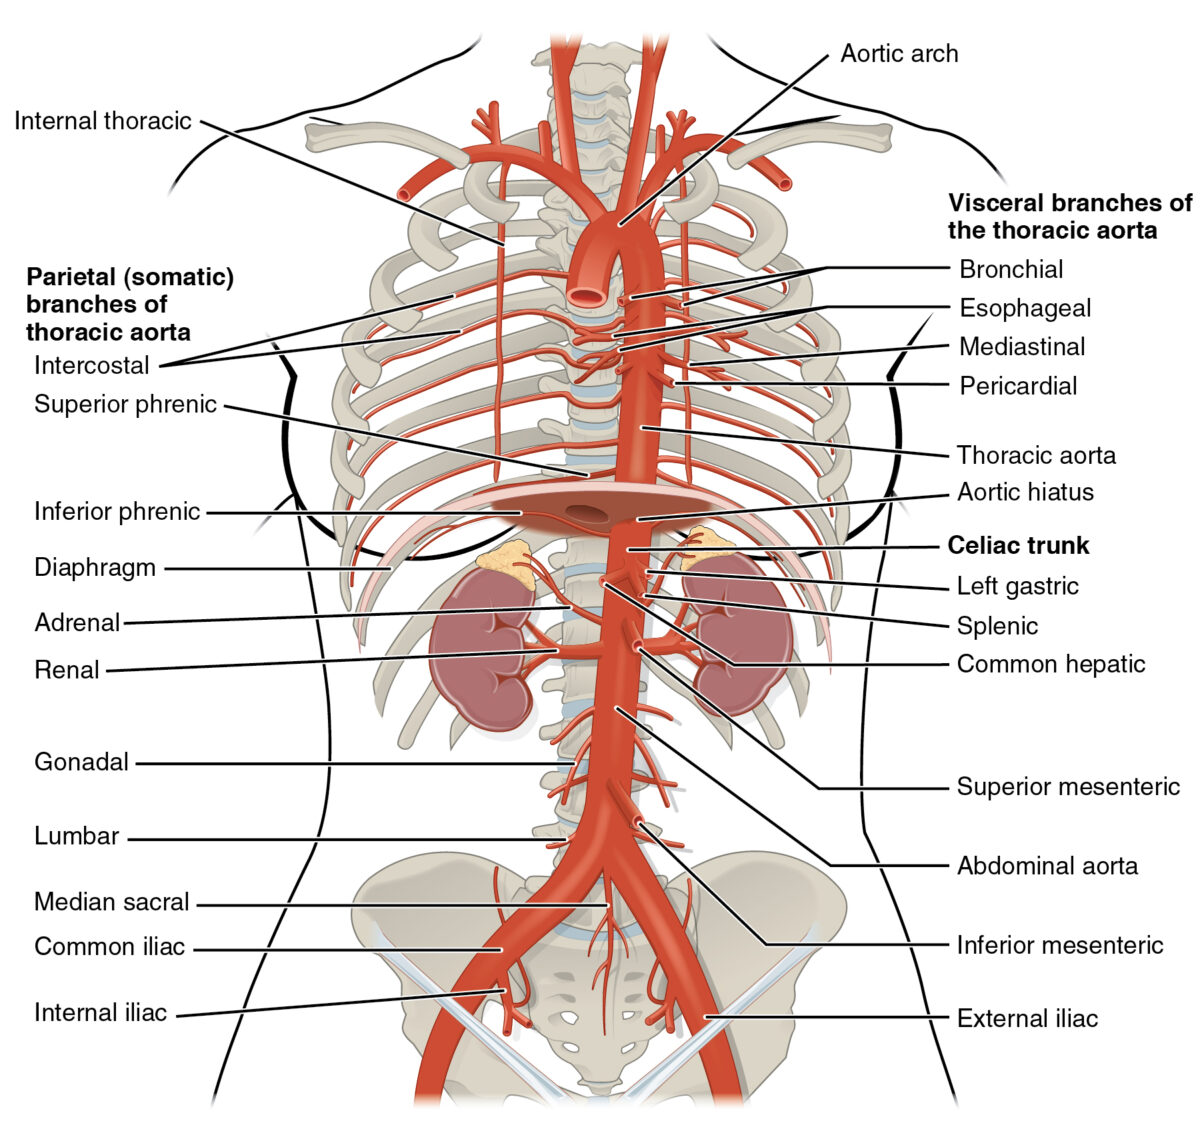 Imagem exibindo algumas das artérias responsáveis pelo suprimento sanguíneo do esôfago